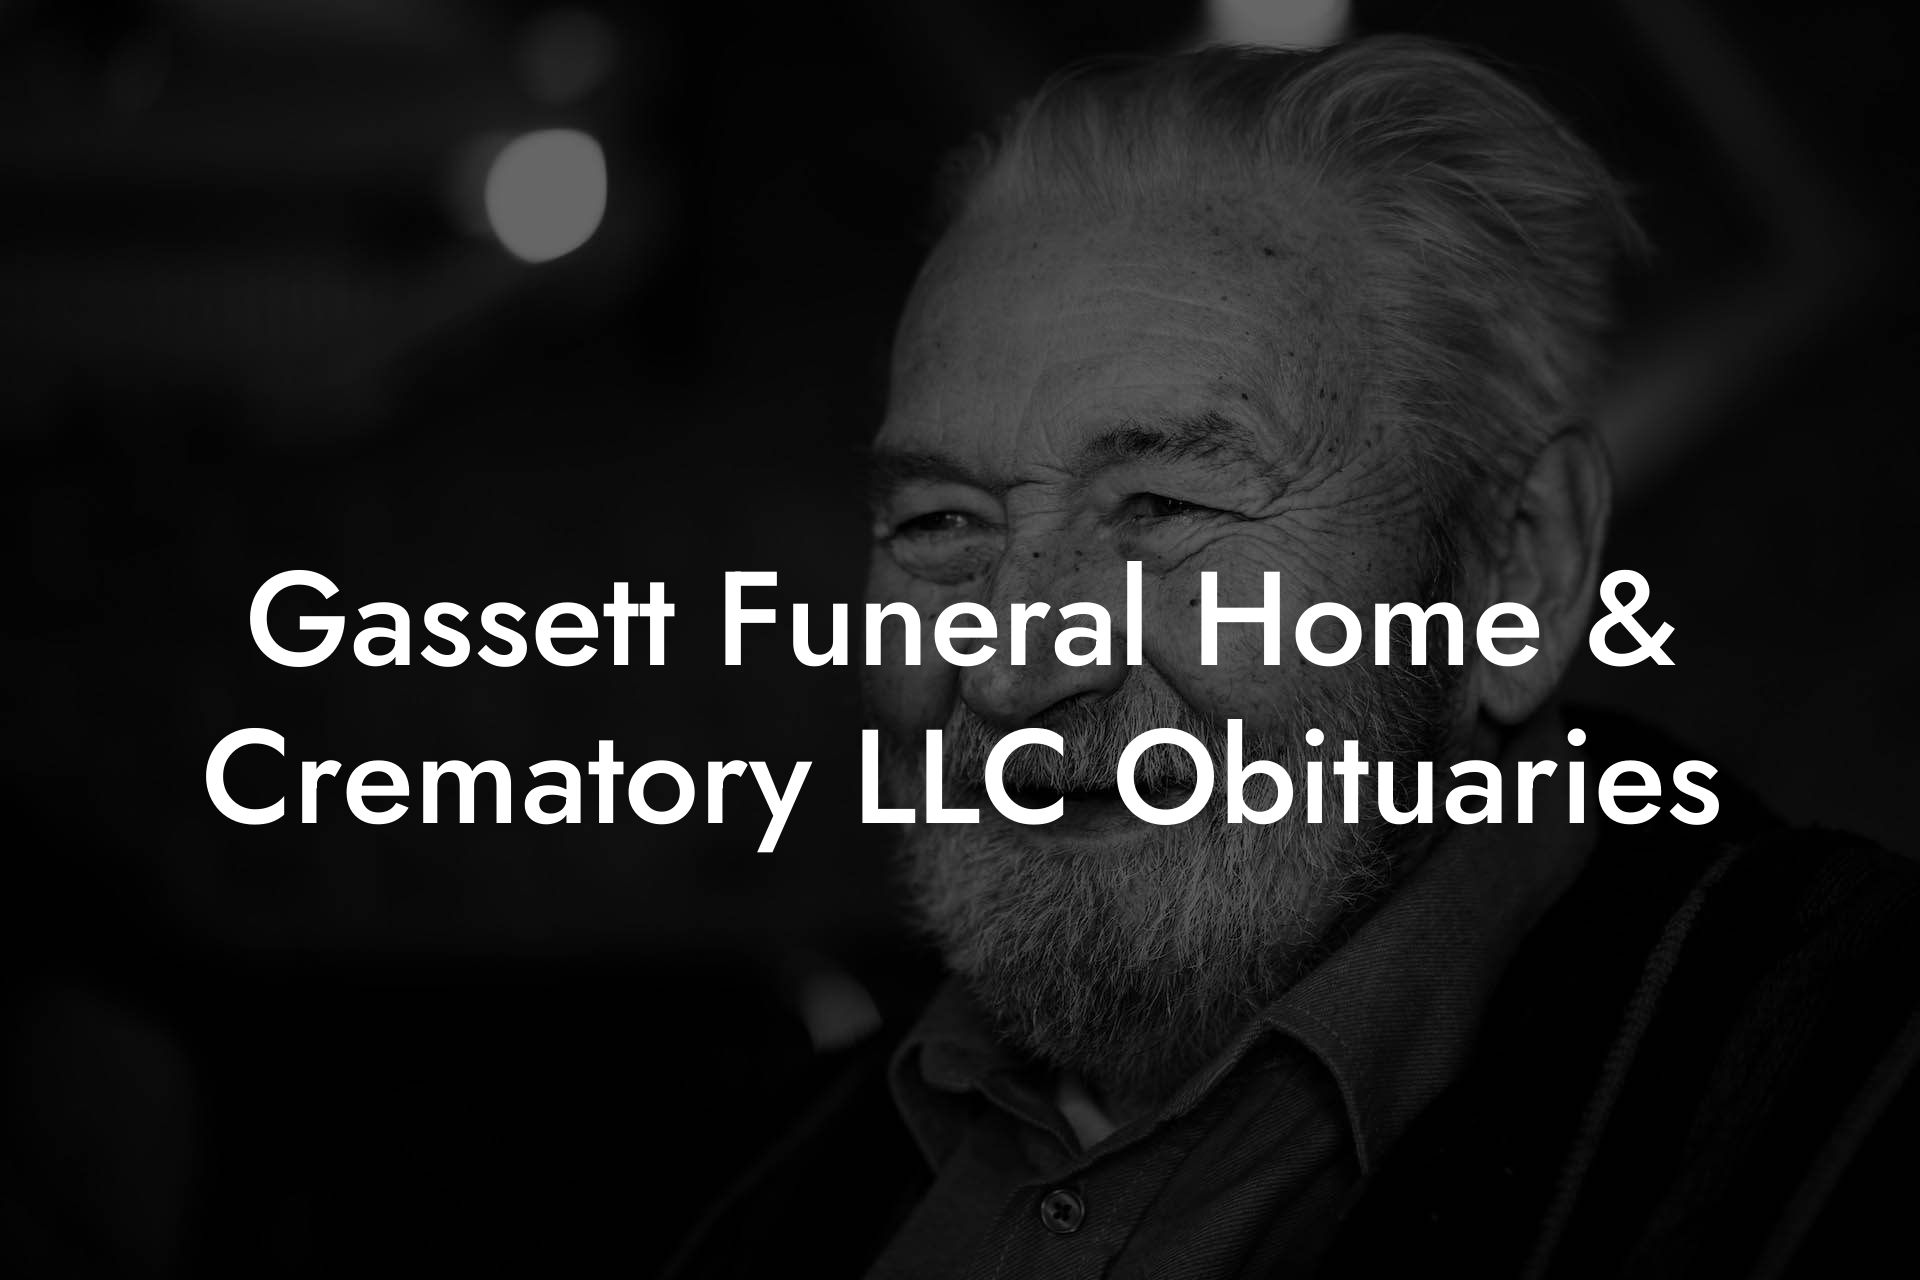 Gassett Funeral Home & Crematory LLC Obituaries